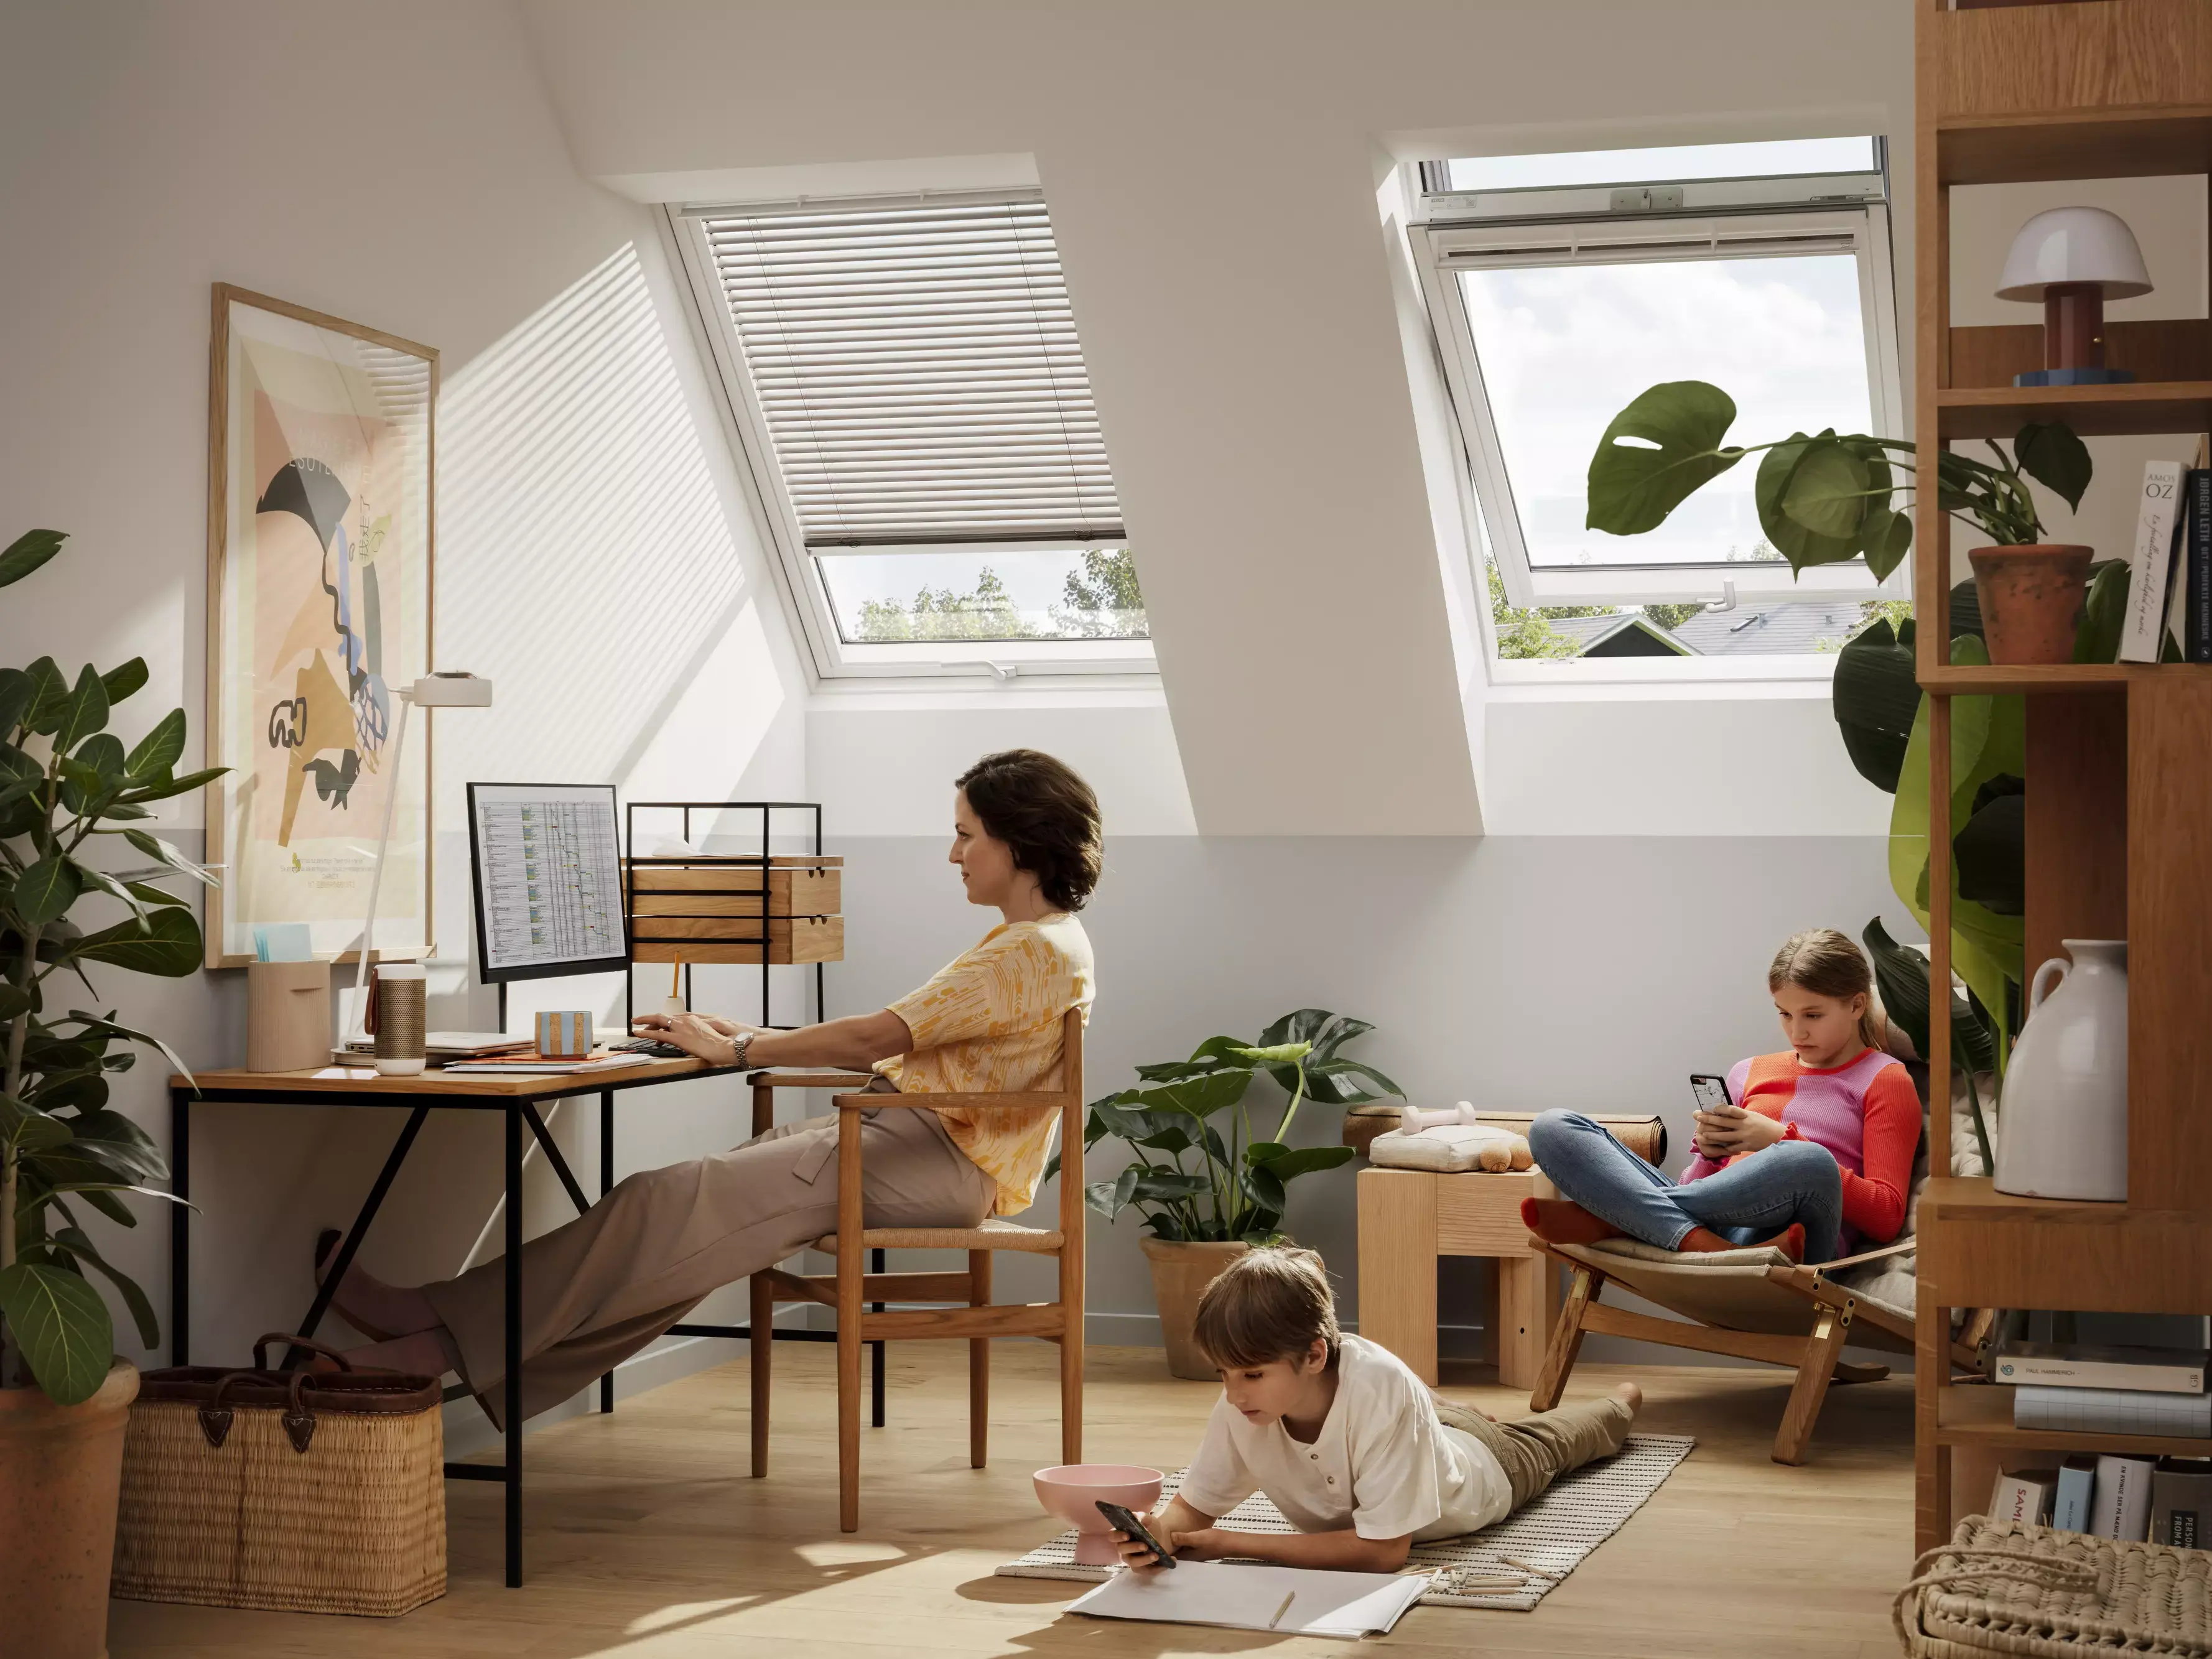 Bureau à domicile sous les combles avec des fenêtres VELUX, une personne au bureau, une autre sur une chaise avec un téléphone, un enfant qui dessine.